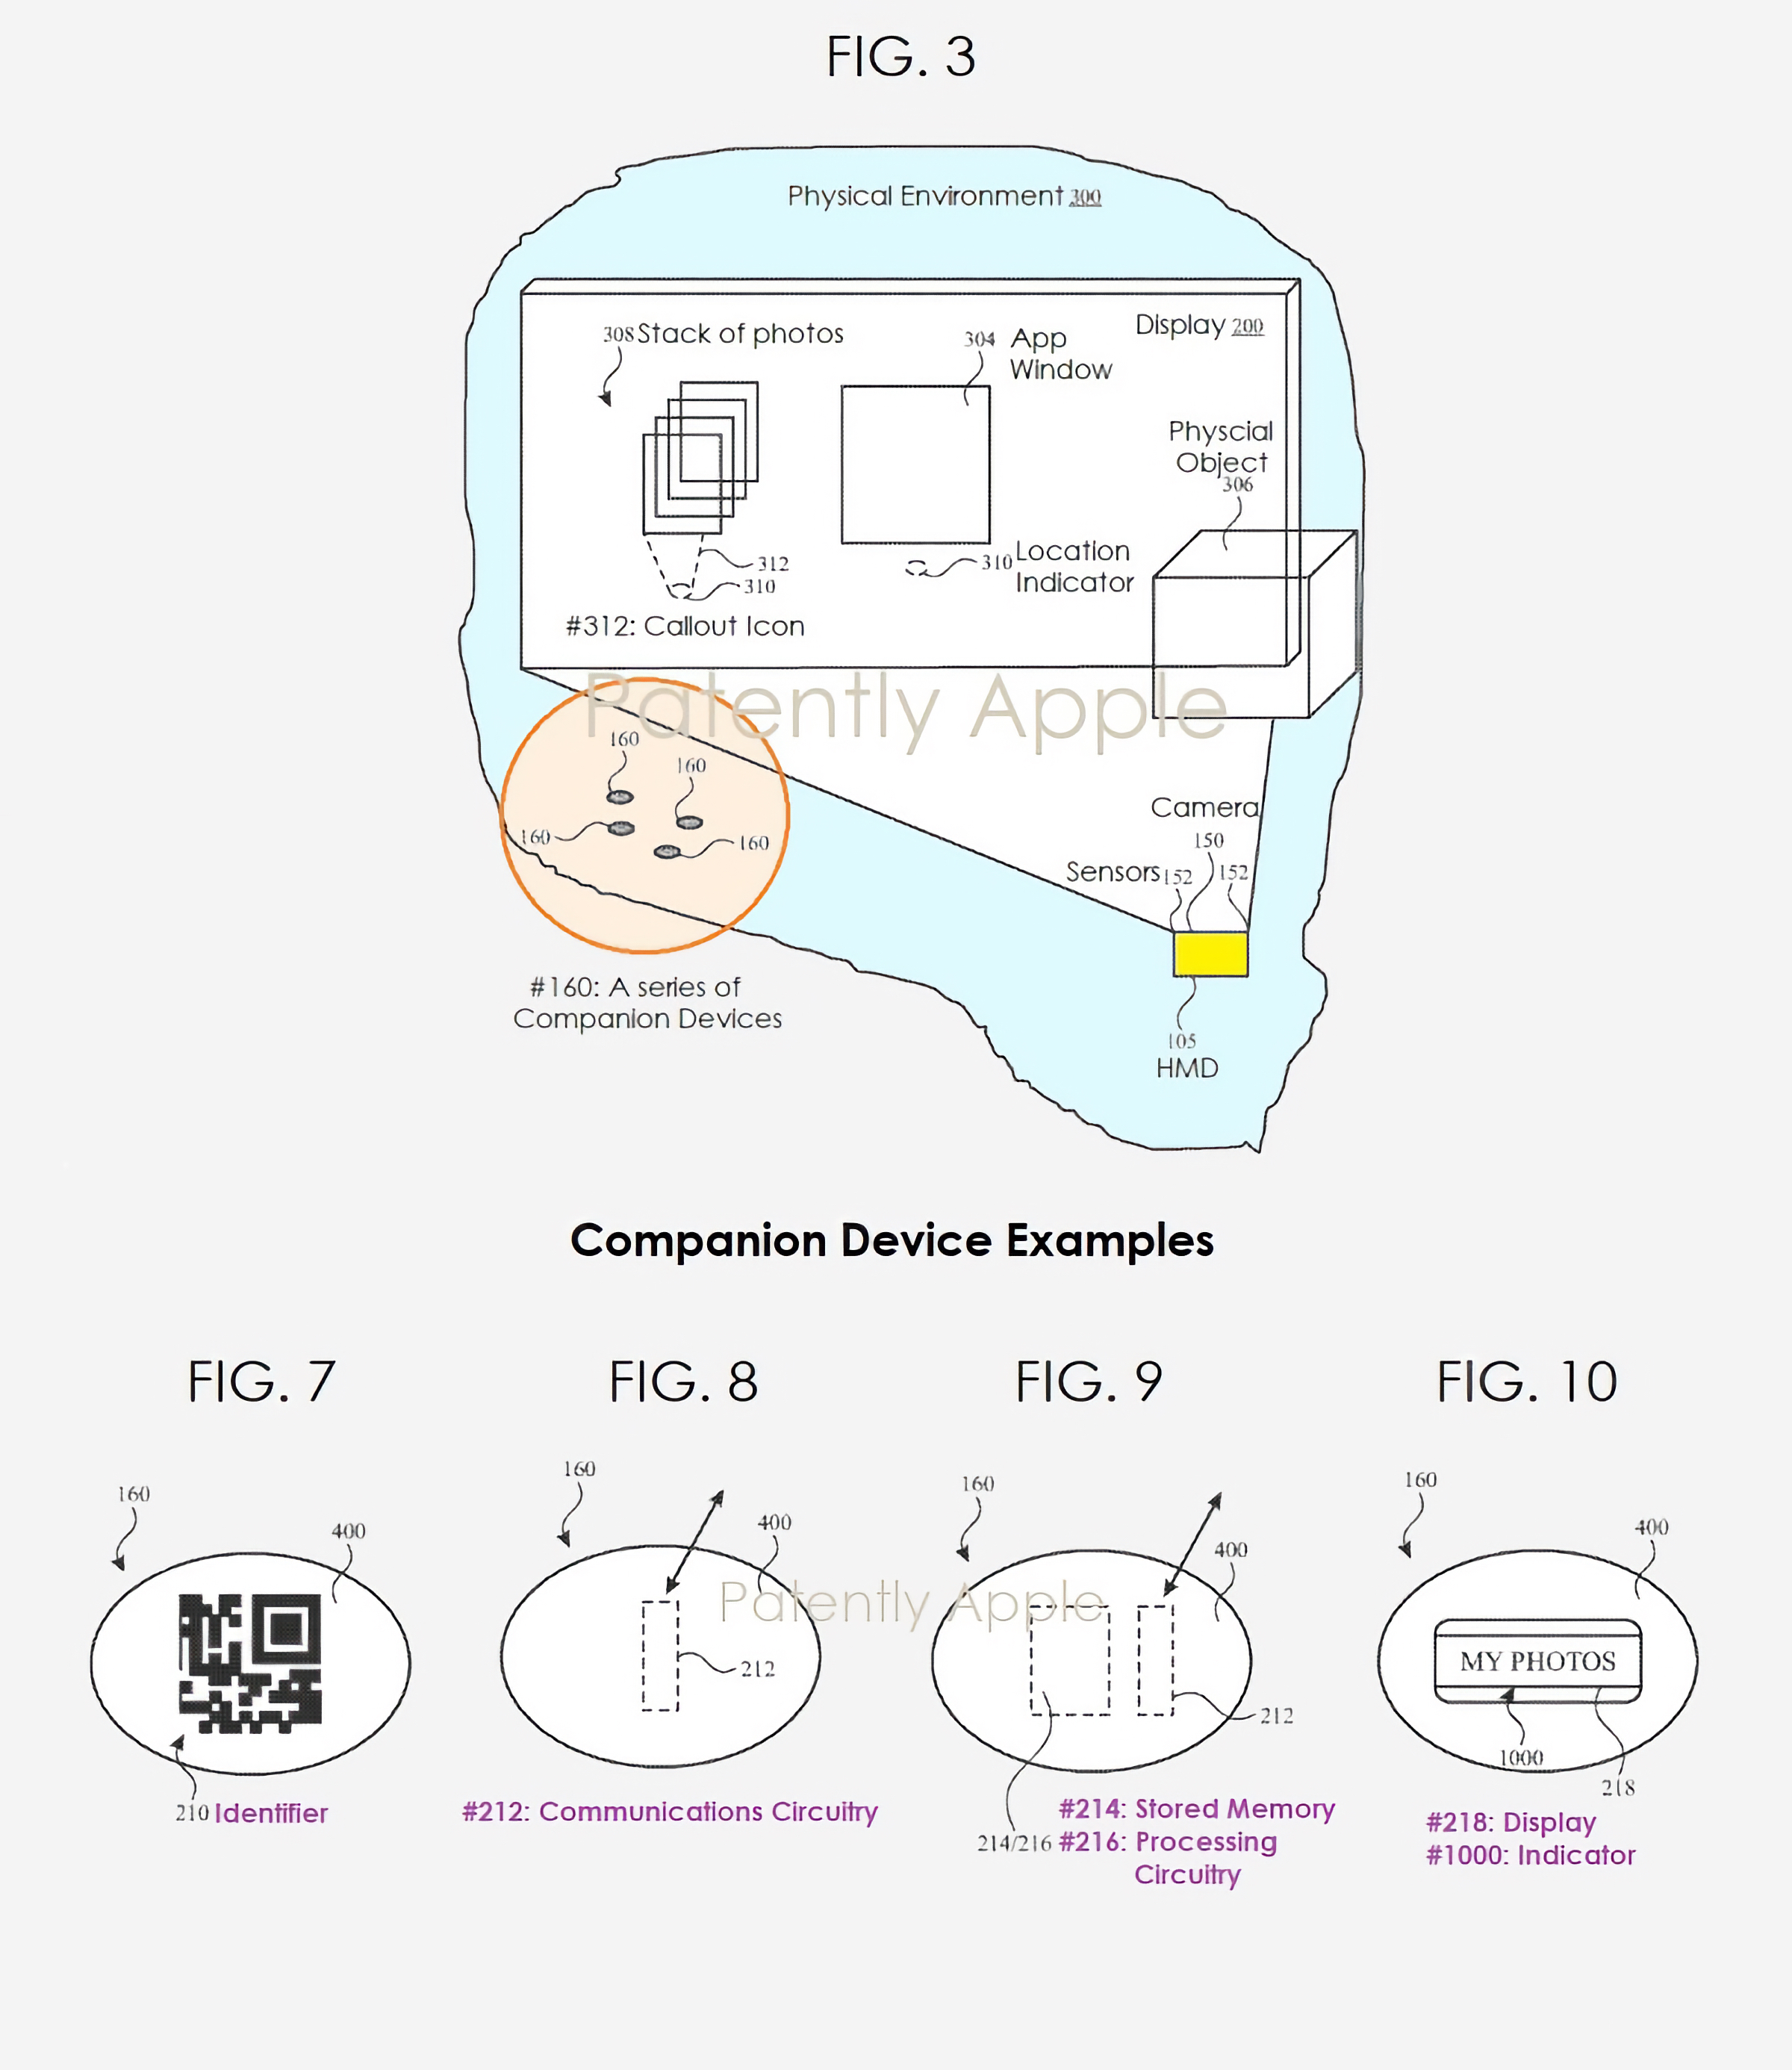 Патент Apple на систему внешнего управления контентом на дисплее при помощи отдельного устройства со своим интерфейсом, не зависимым с управляемым объектом (© Patently Apple)